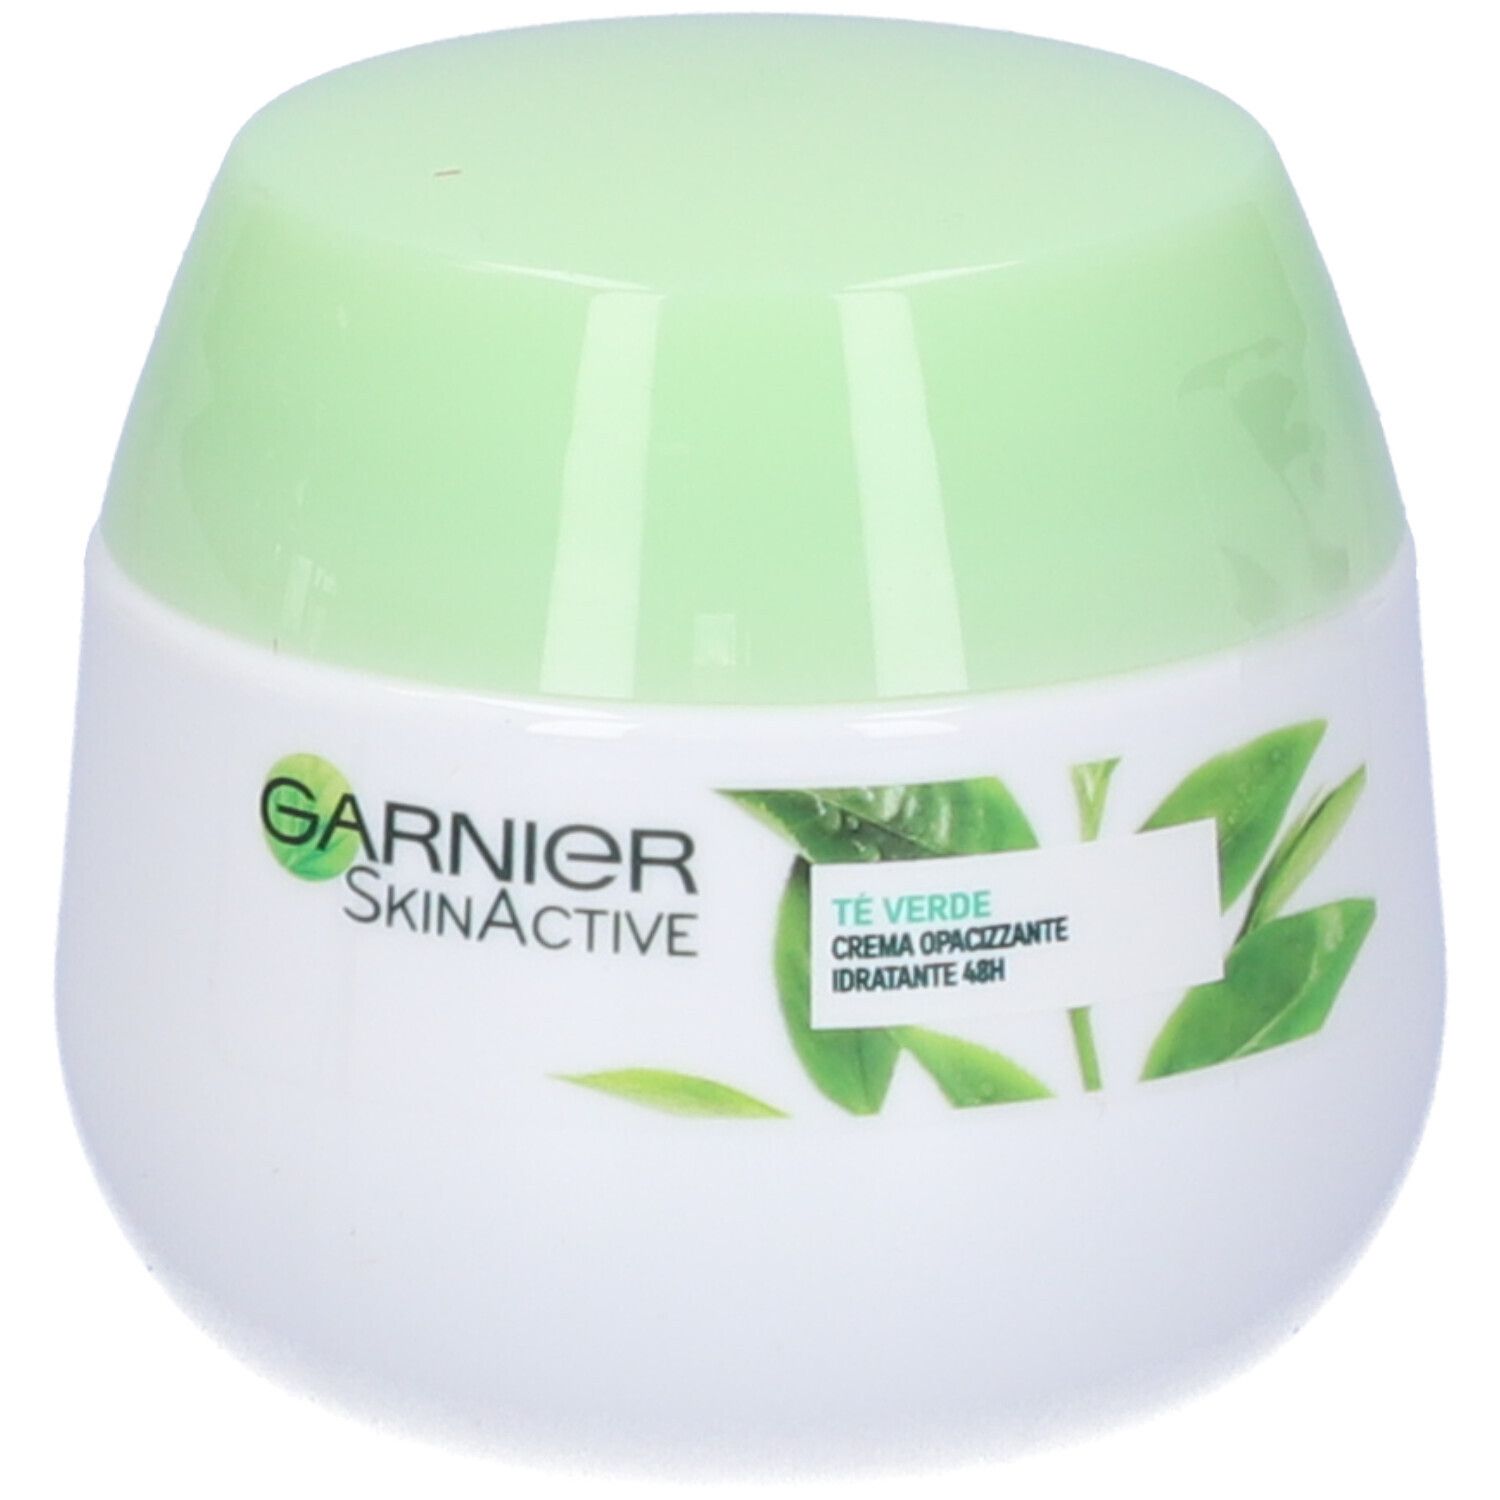 Image of Garnier Crema Viso Idratante Opacizzante SkinActive, Ideale per Pelli Miste o Grasse, Arricchita con The Verde, 50 ml